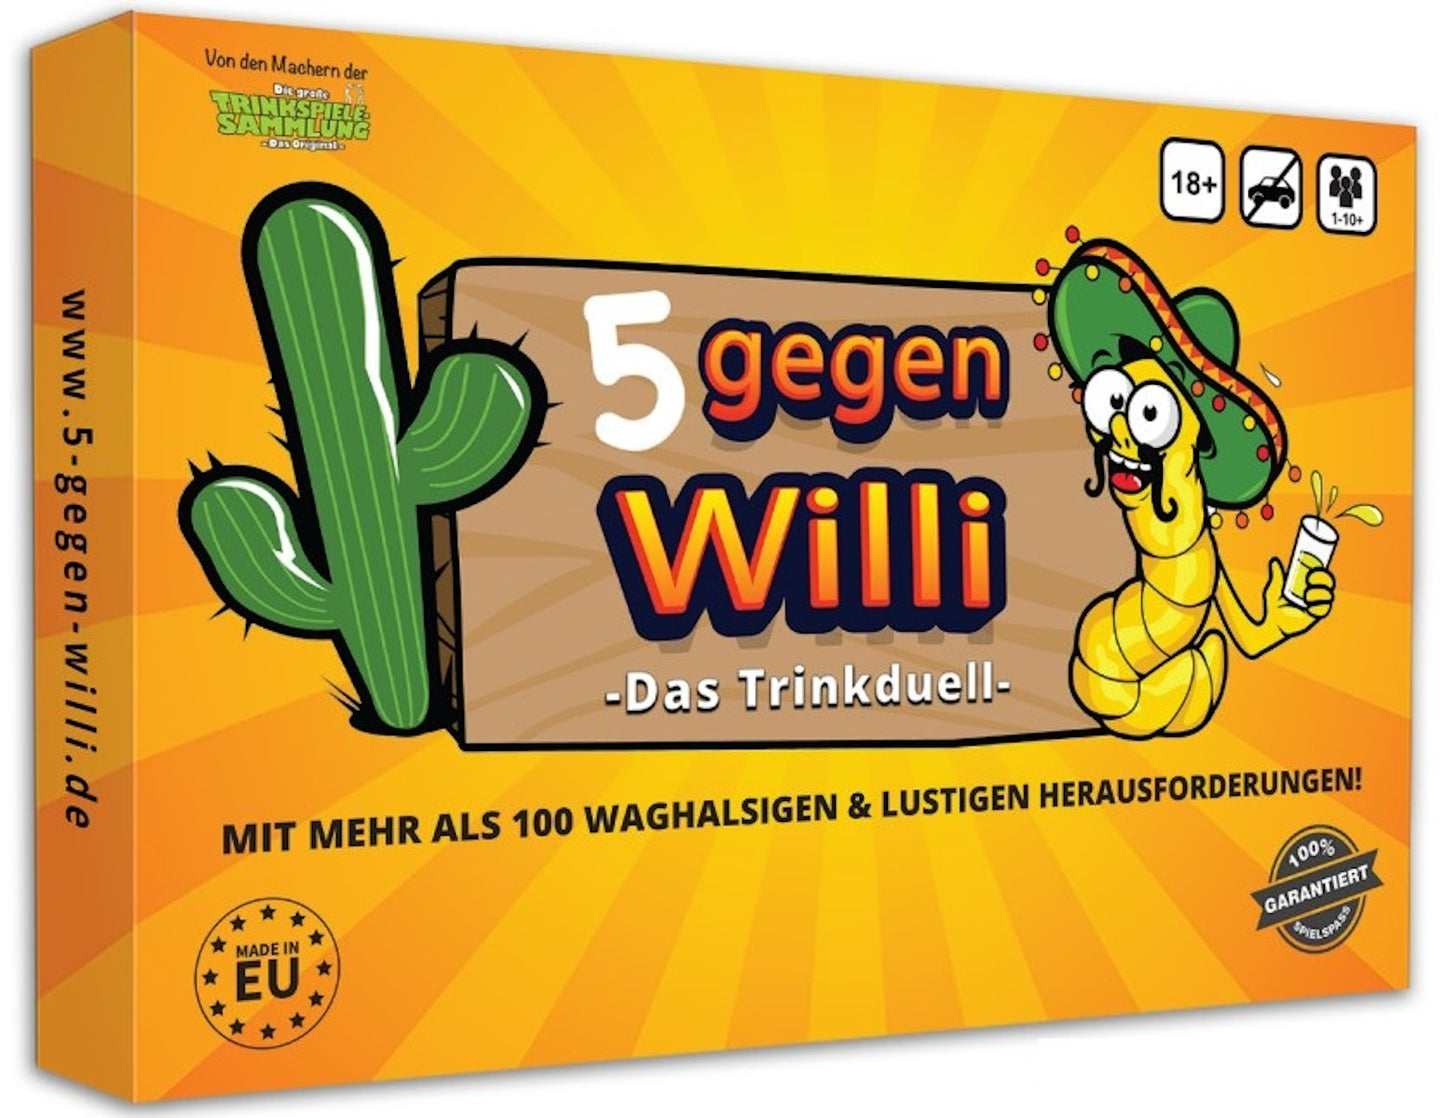 5 gegen Willi - Das Trinkduell - mehr als 100 waghalsige Herausforderungen warten auf Euch!